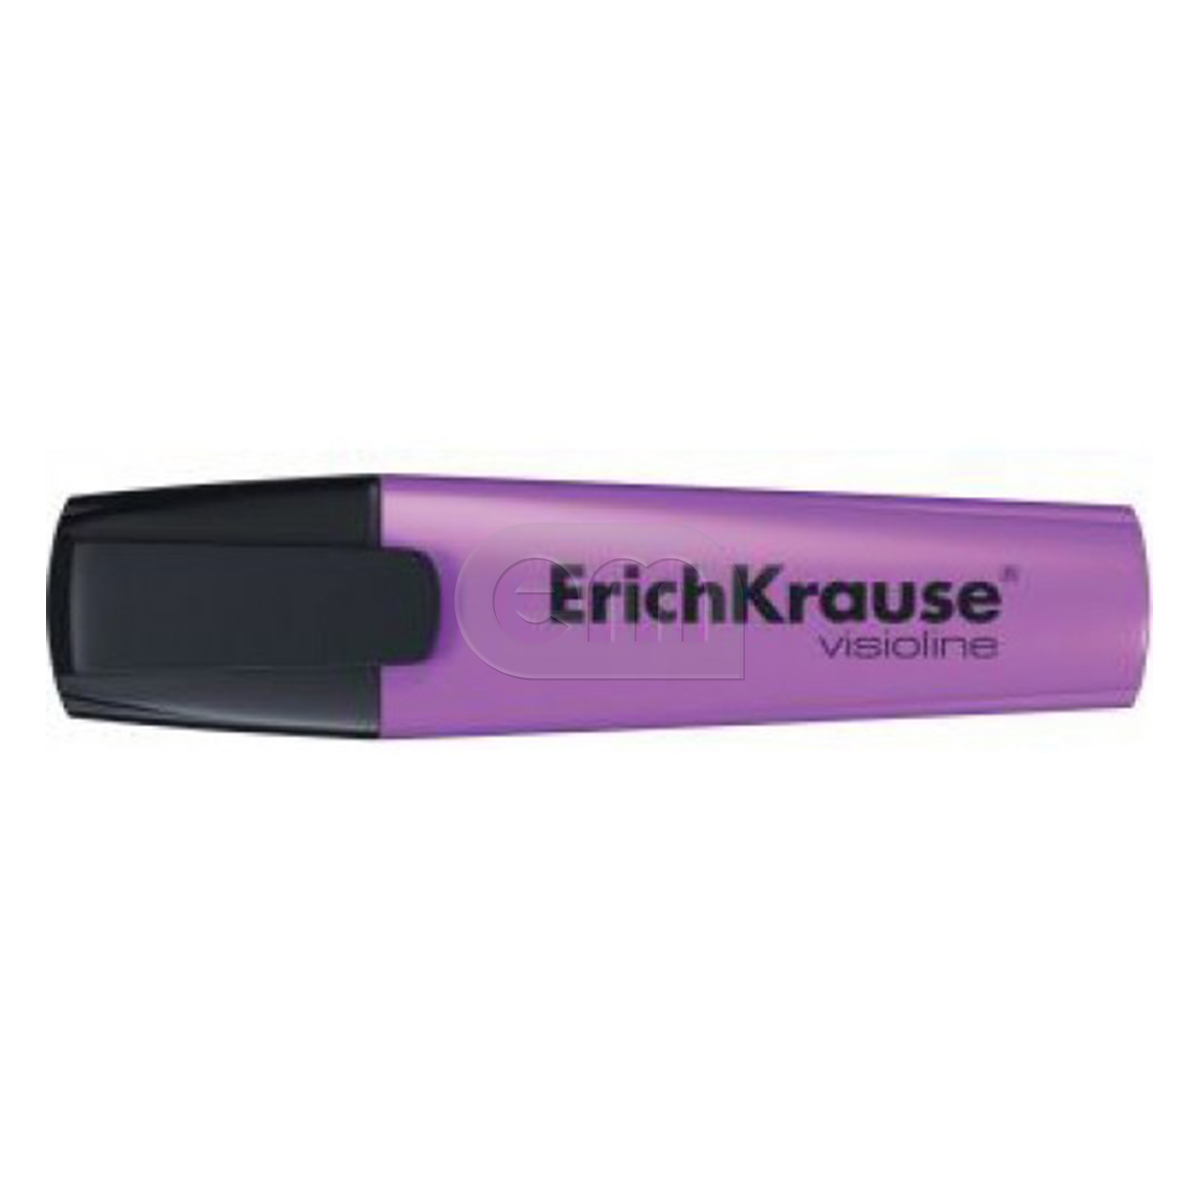 Текстовыделитель "Erich Krause" 06-5.2мм фиолетовый